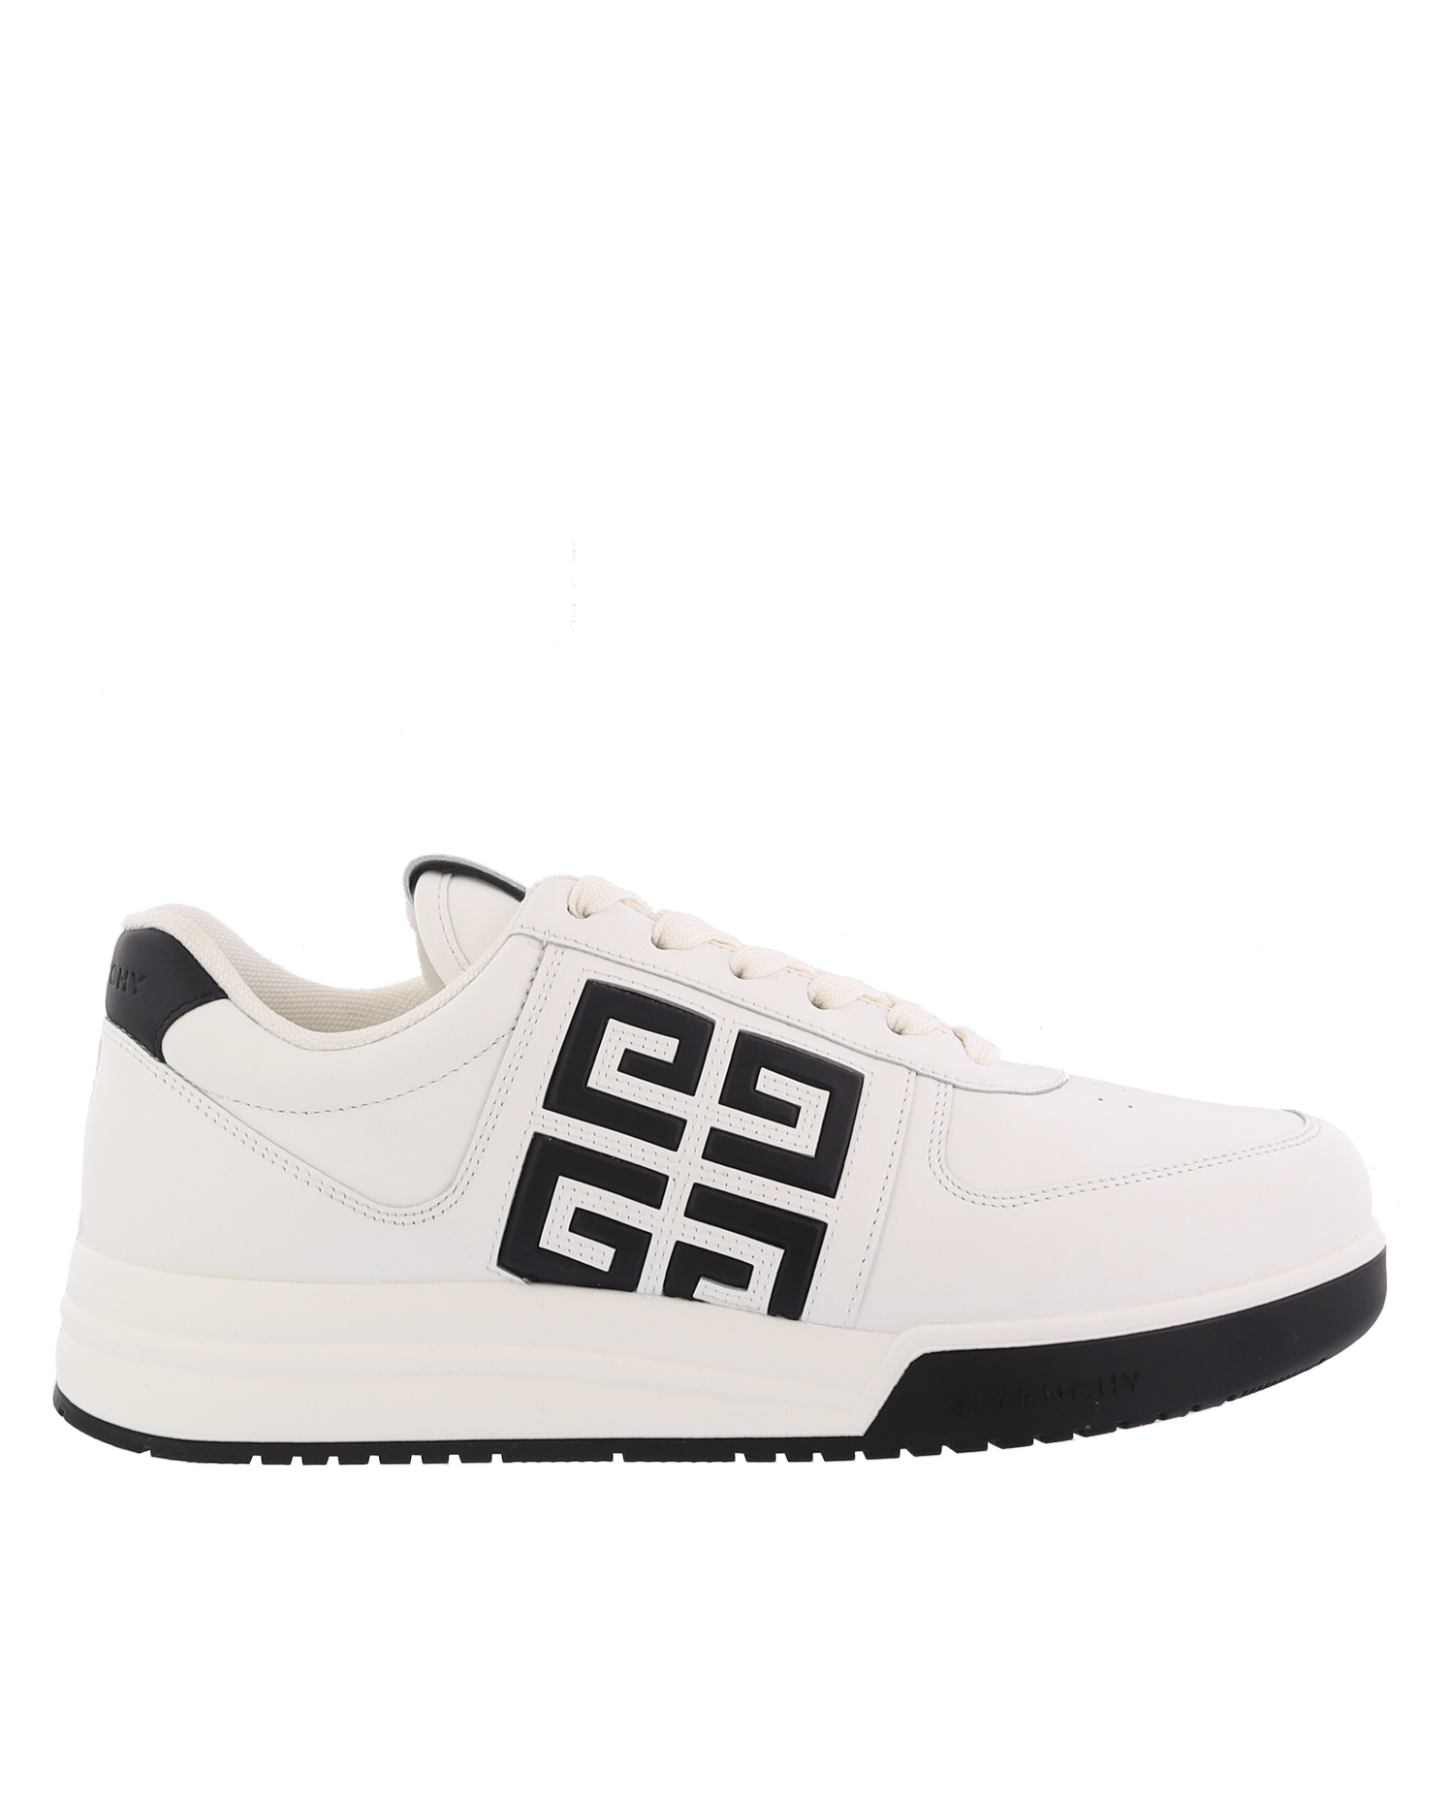 Heren G4 Low Sneakers Wit/Zwart